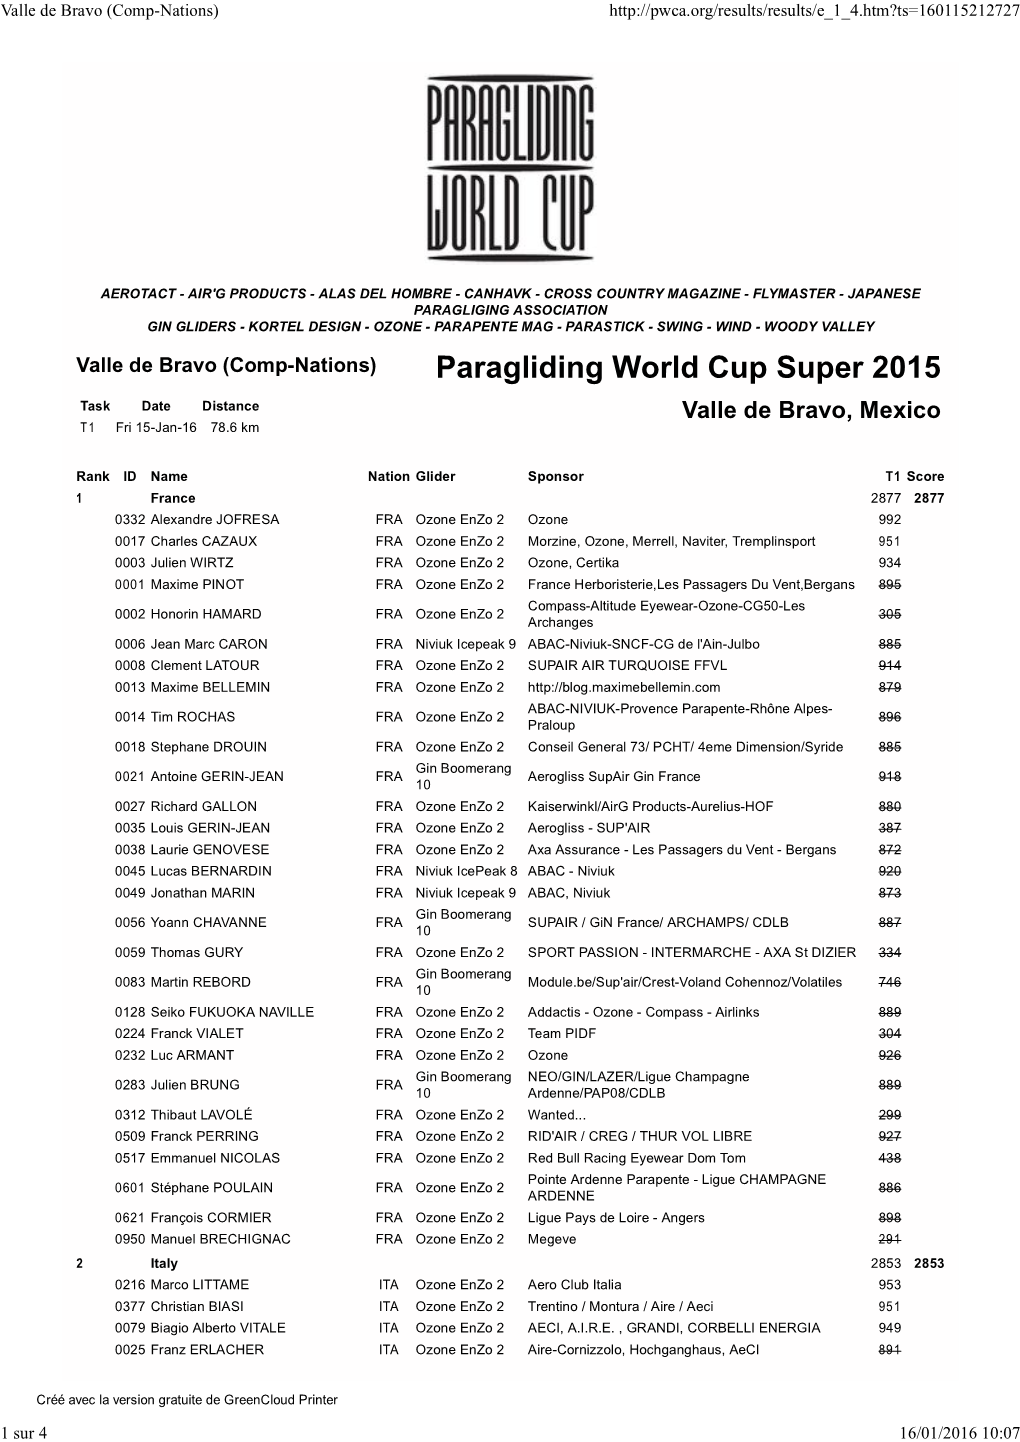 Paragliding World Cup Super 2015 Task Date Distance Valle De Bravo, Mexico T 1 Fri 15-Jan-16 78.6 Km